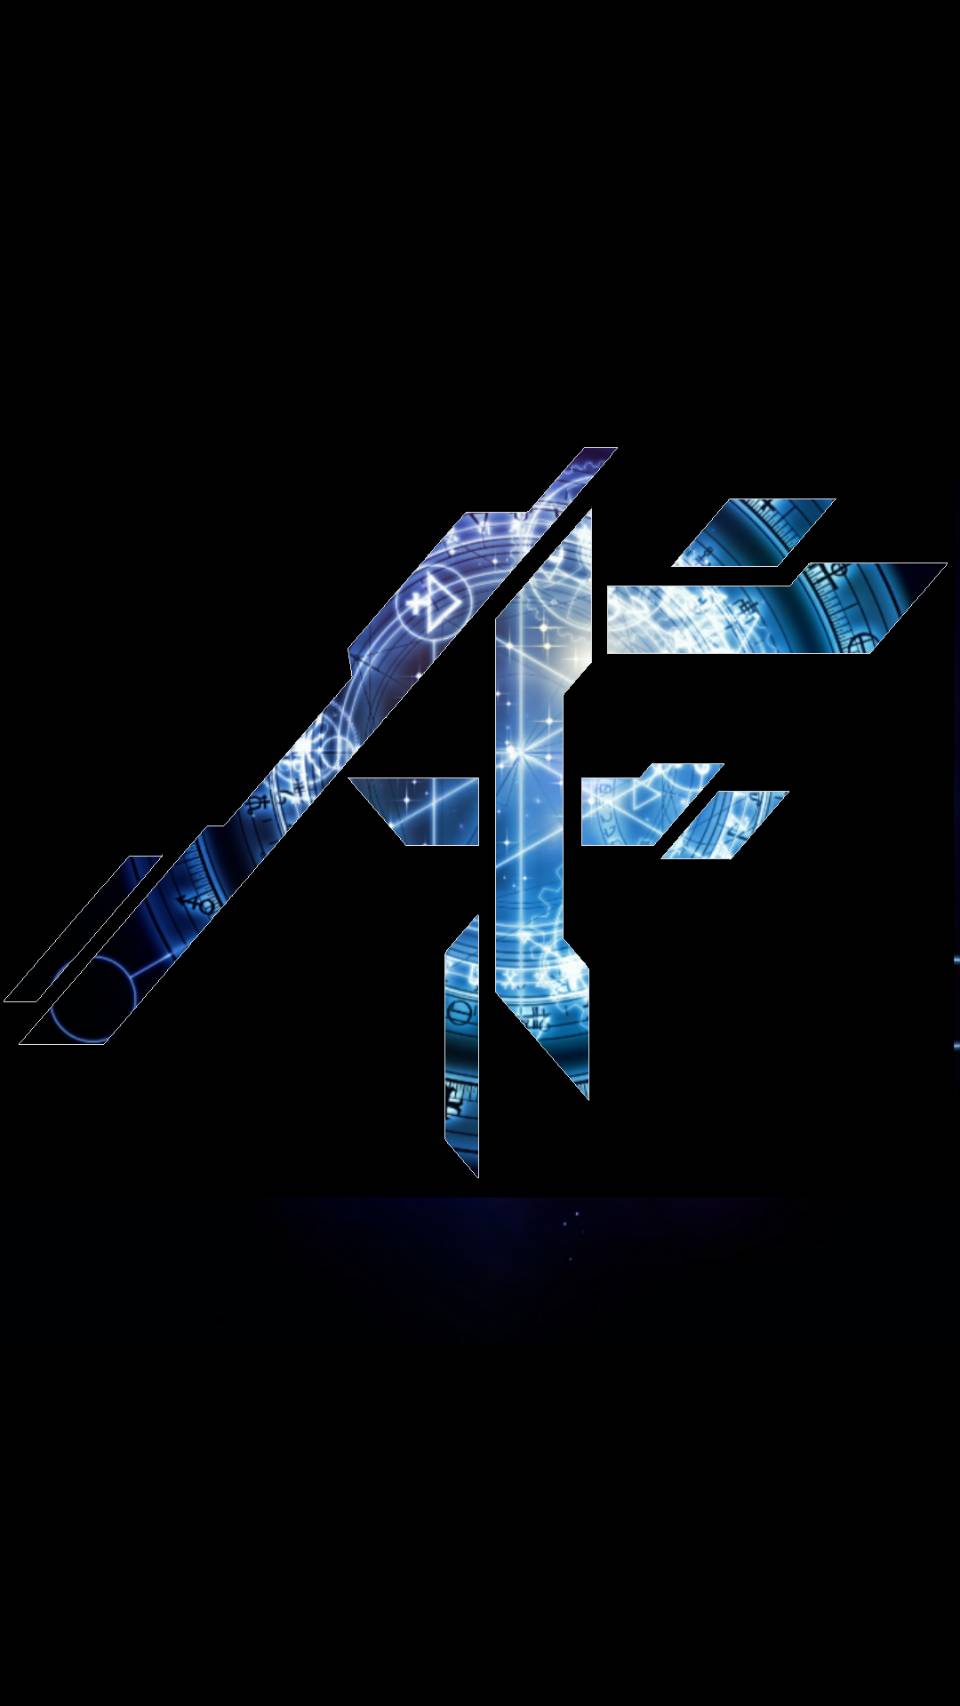 Af Logo - AF Logos - Arcadia Federation